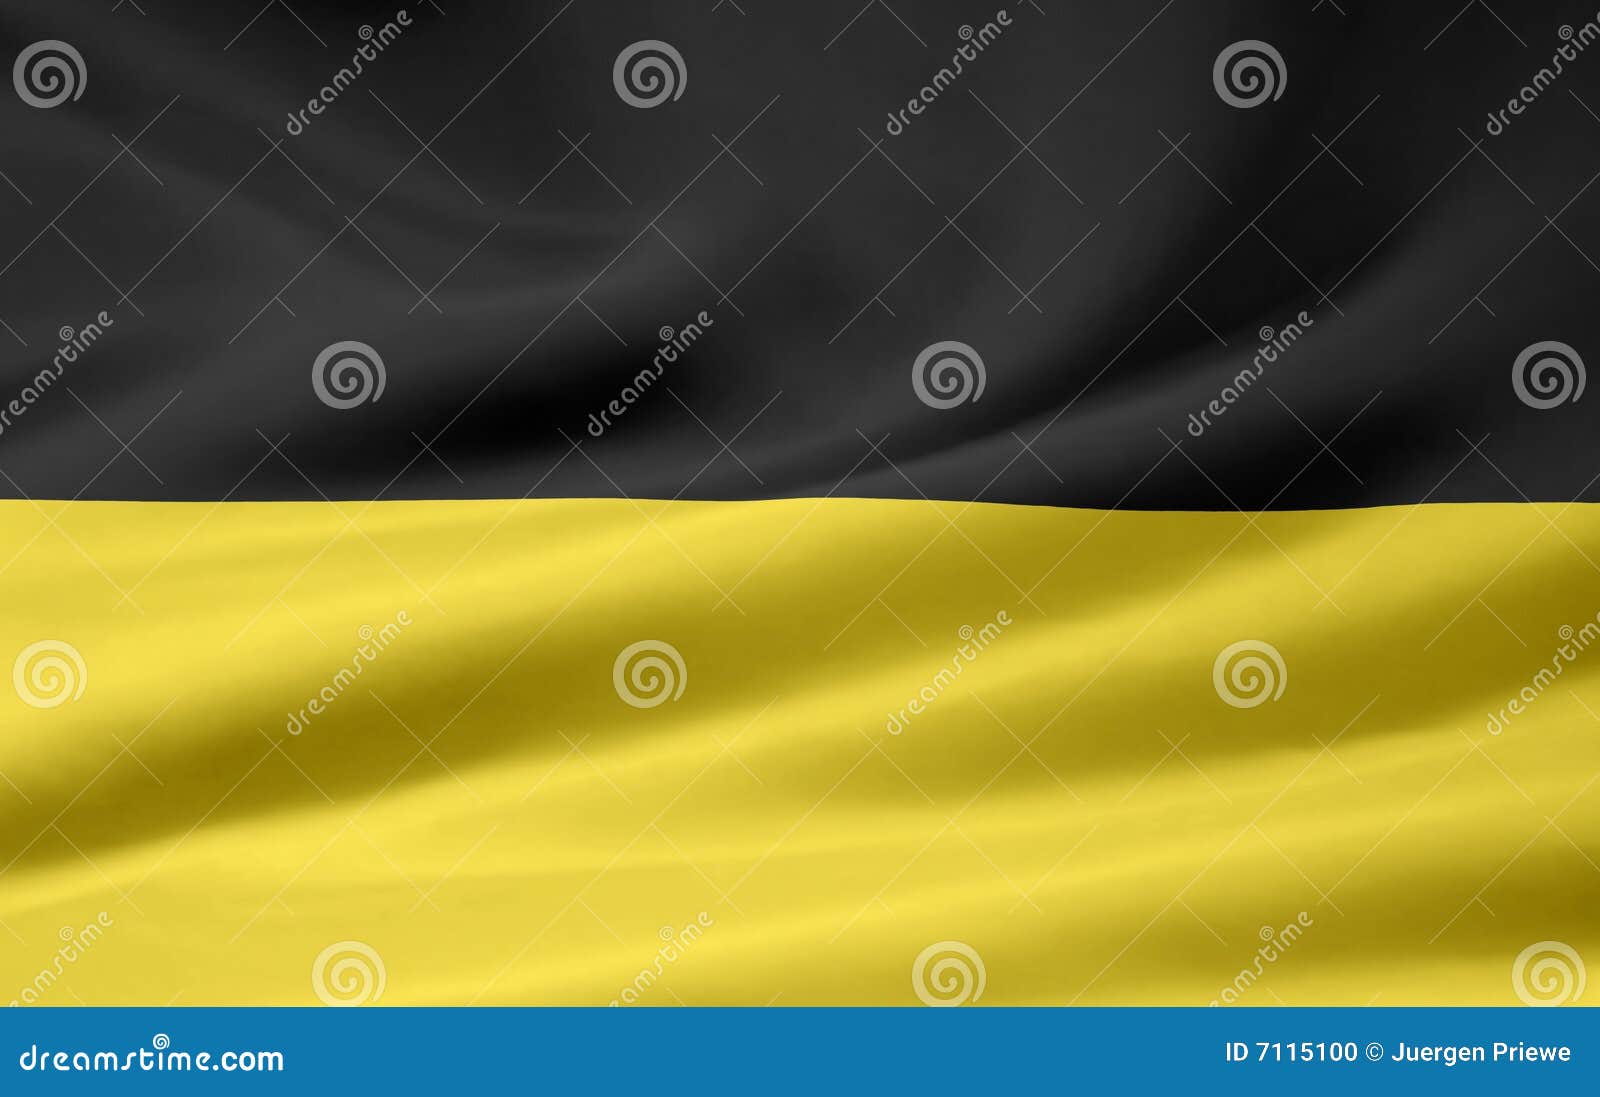 Flag of Baden Wuerttemberg stock illustration. Illustration of ...